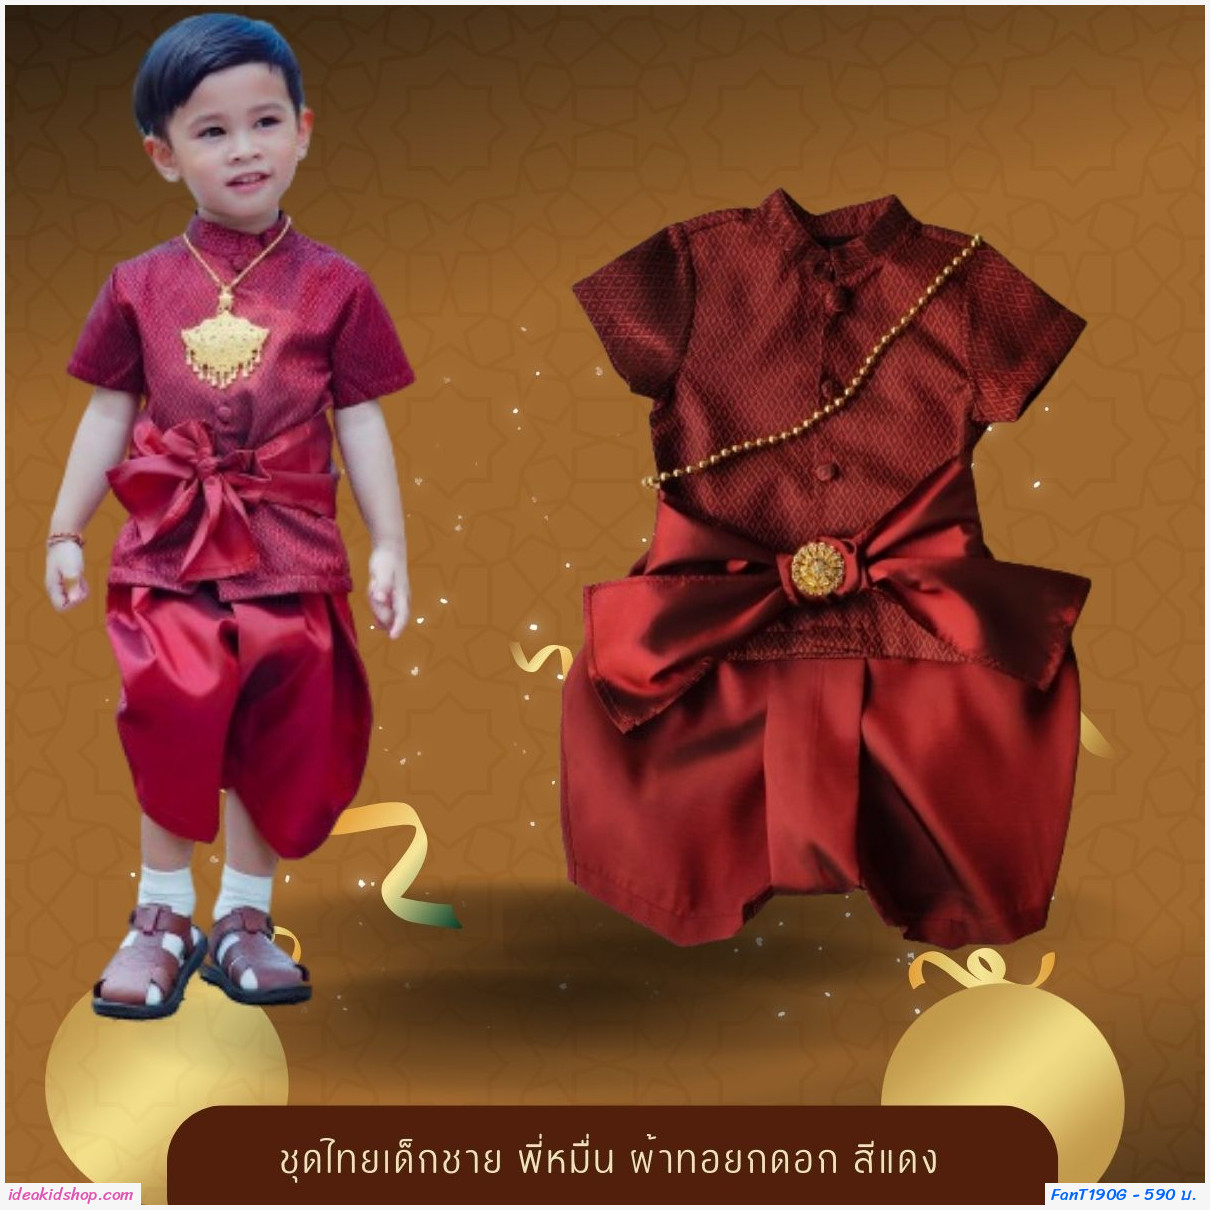 ชุดไทยเด็กชาย พี่หมื่น ผ้าทอยกดอก สีแดงสด